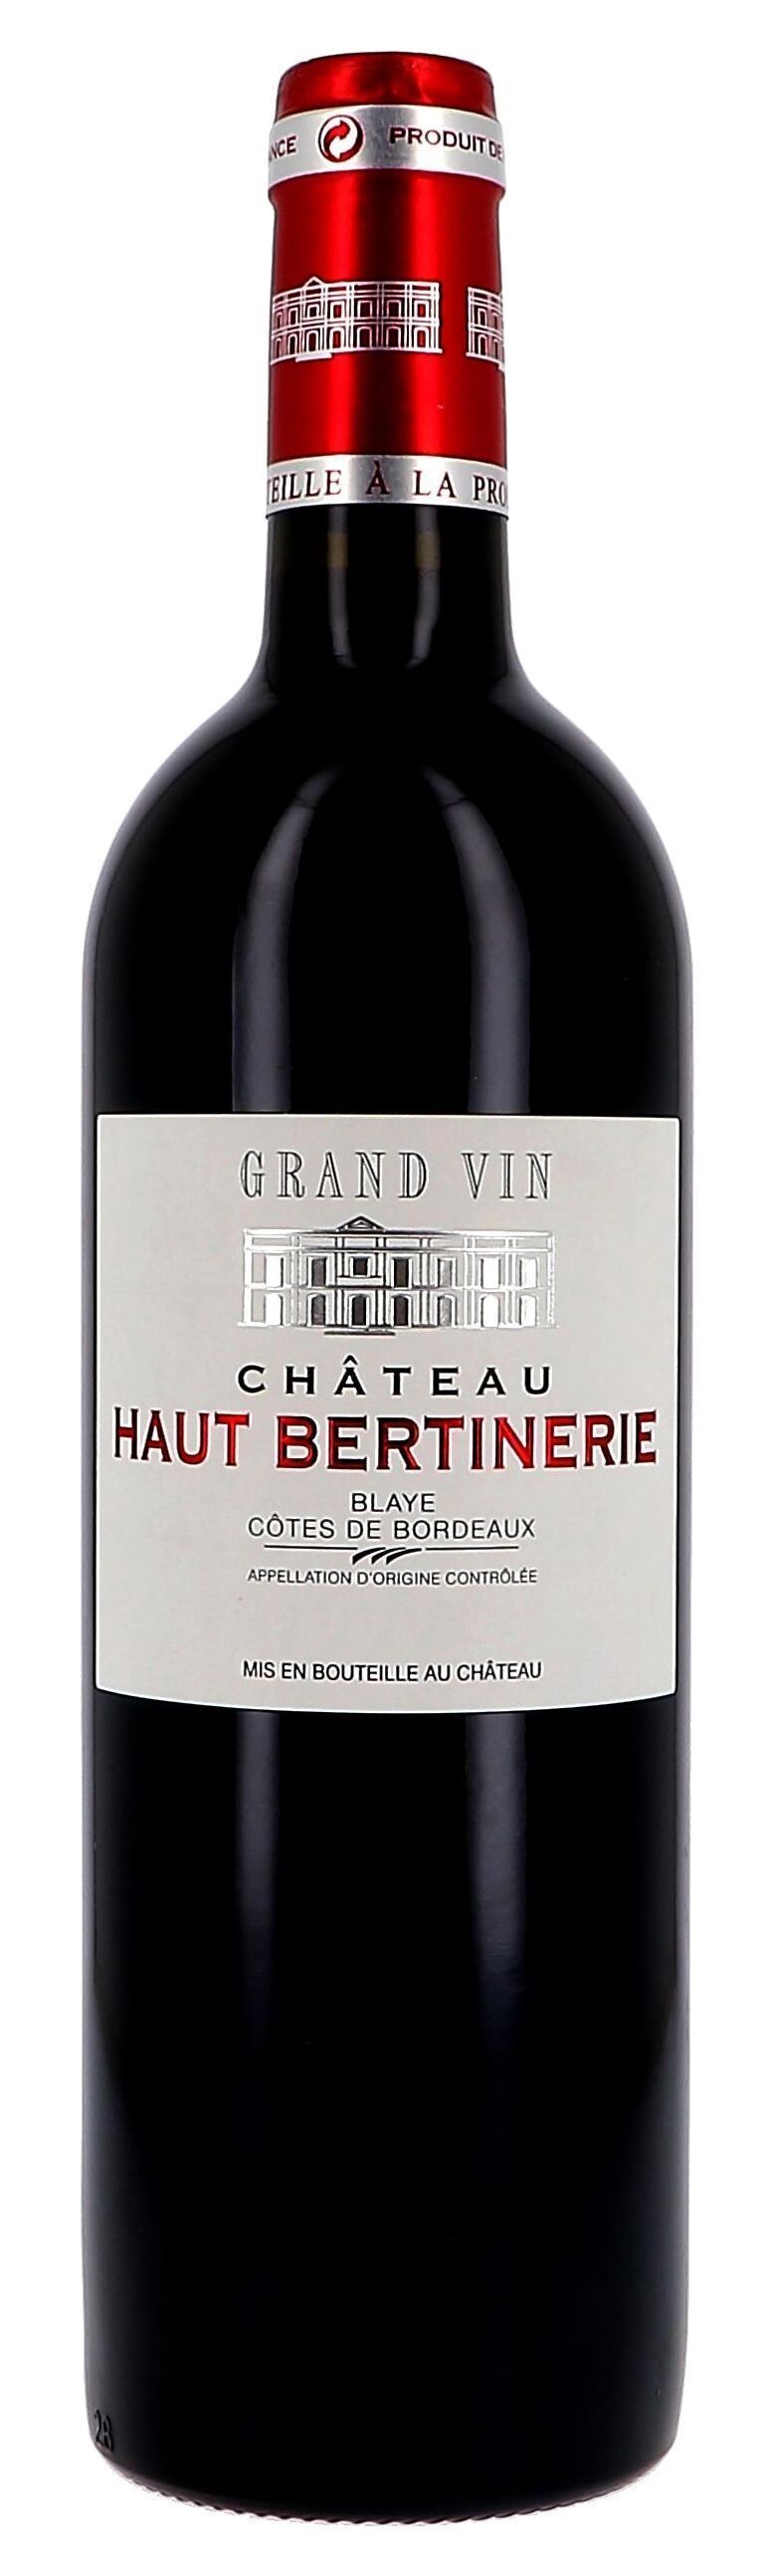 Chateau Haut-Bertinerie rood 75cl 2015 Blaye Cotes de Bordeaux (Wijnen)